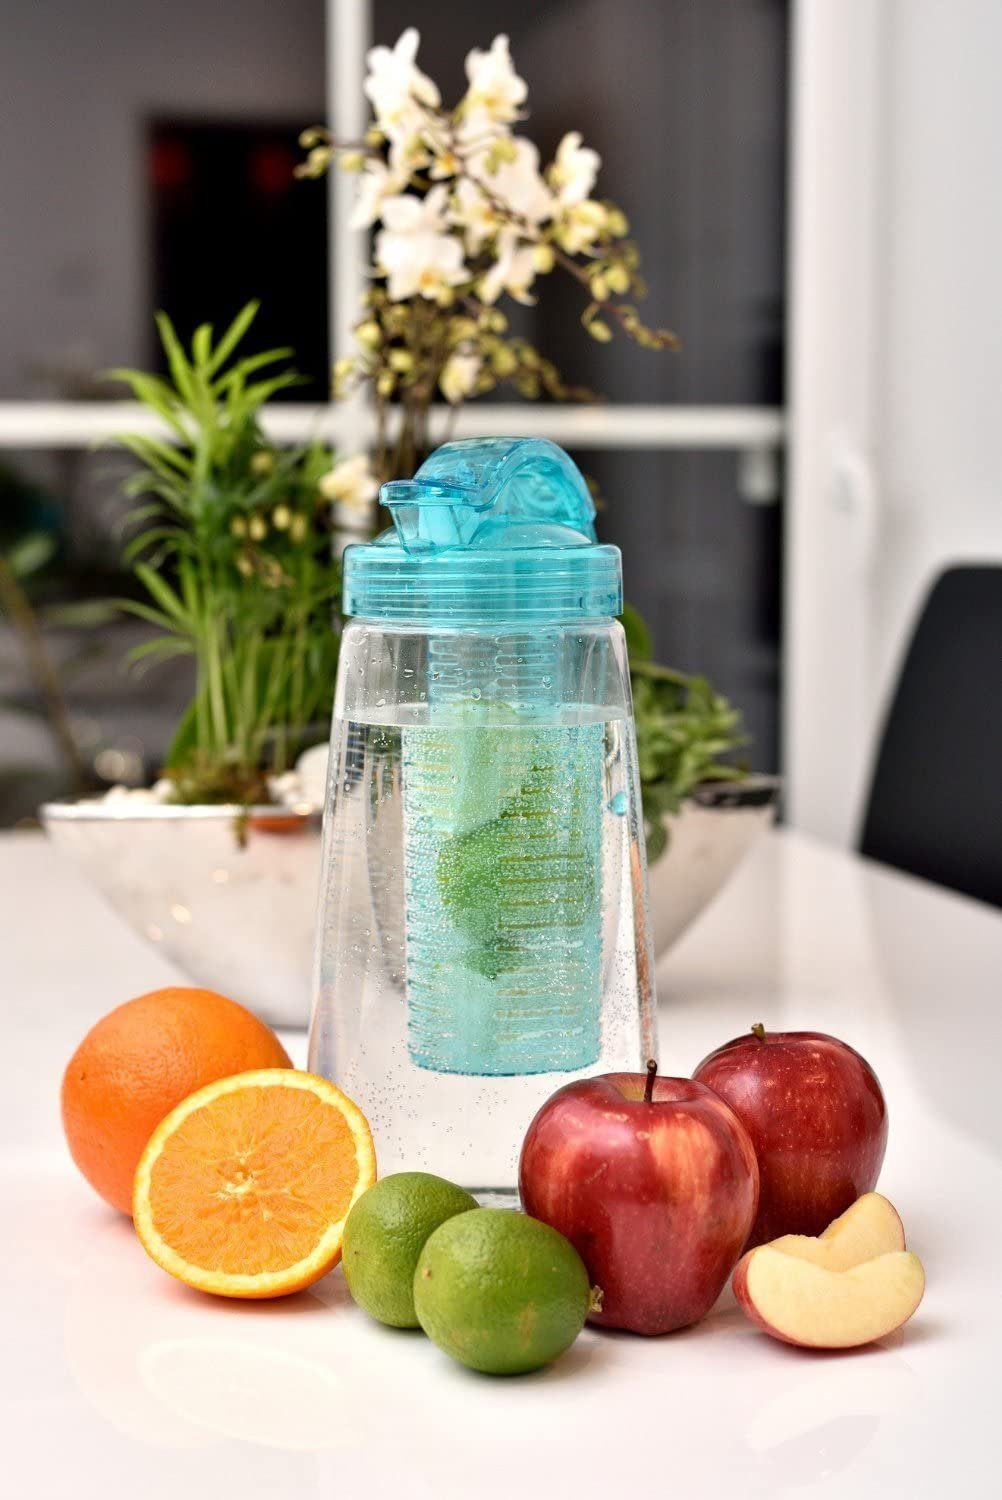 l Kunststoff-Karaffe Karaffe, BPA-frei, Frucht-Einsatz, Wasserkrug türkis RUBBERNECK 2 Tritan mit